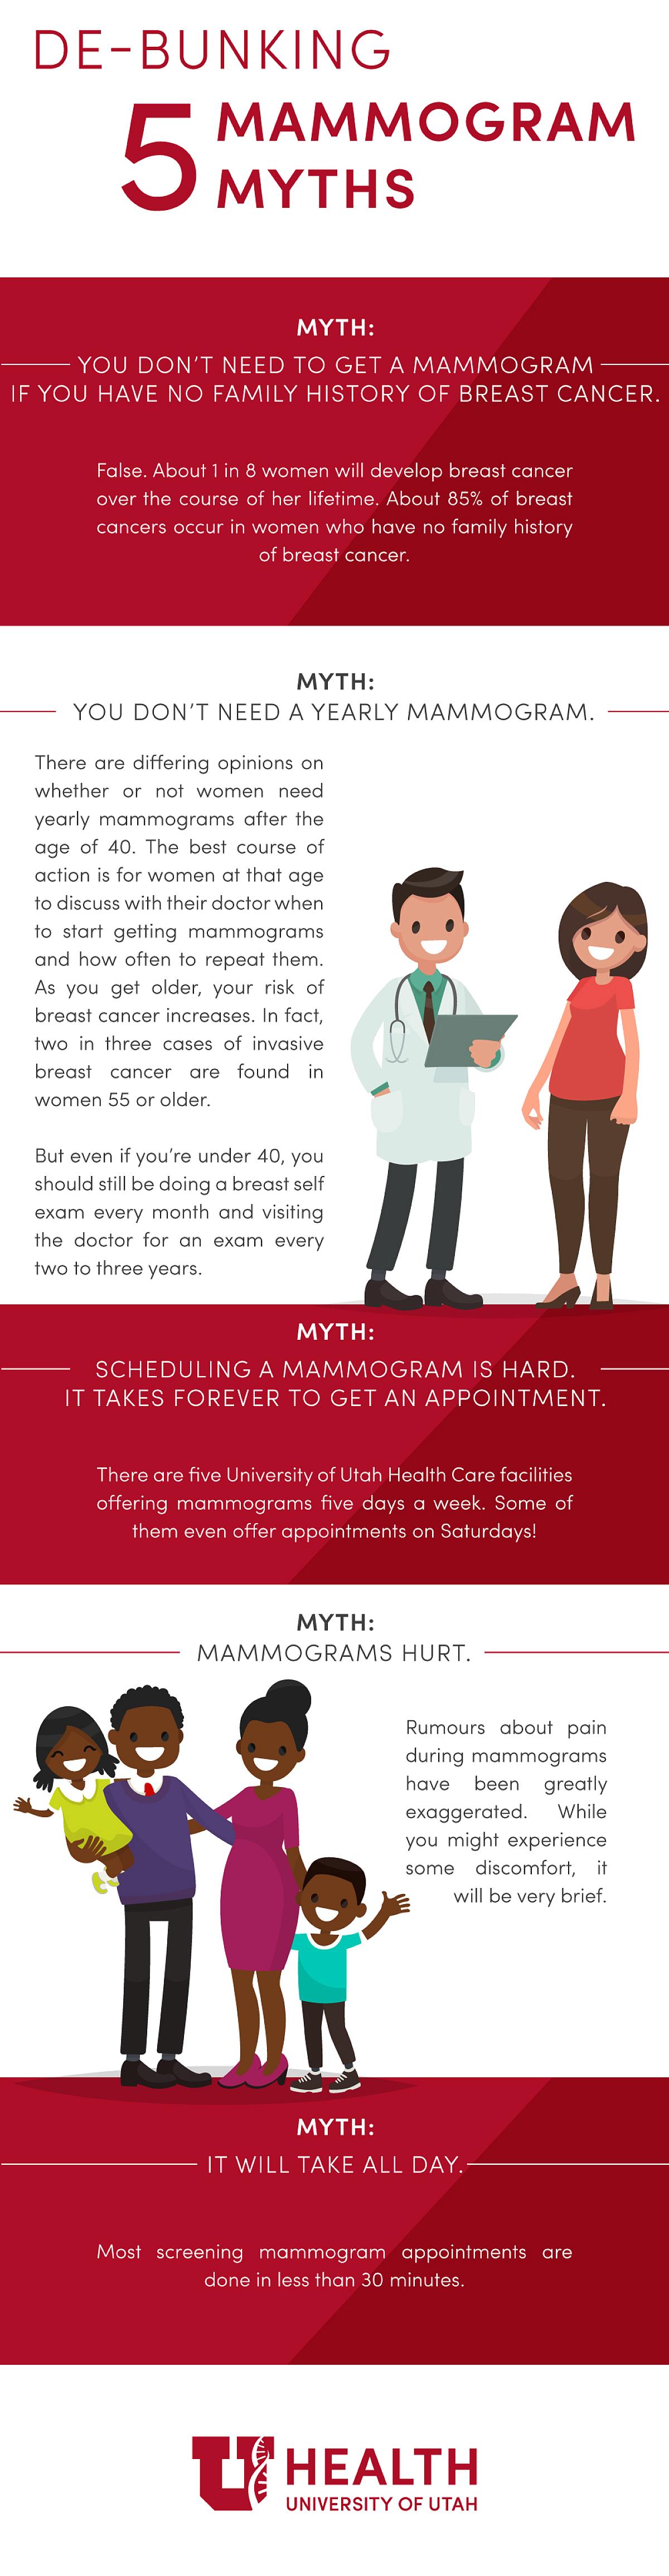 Mammogram myths